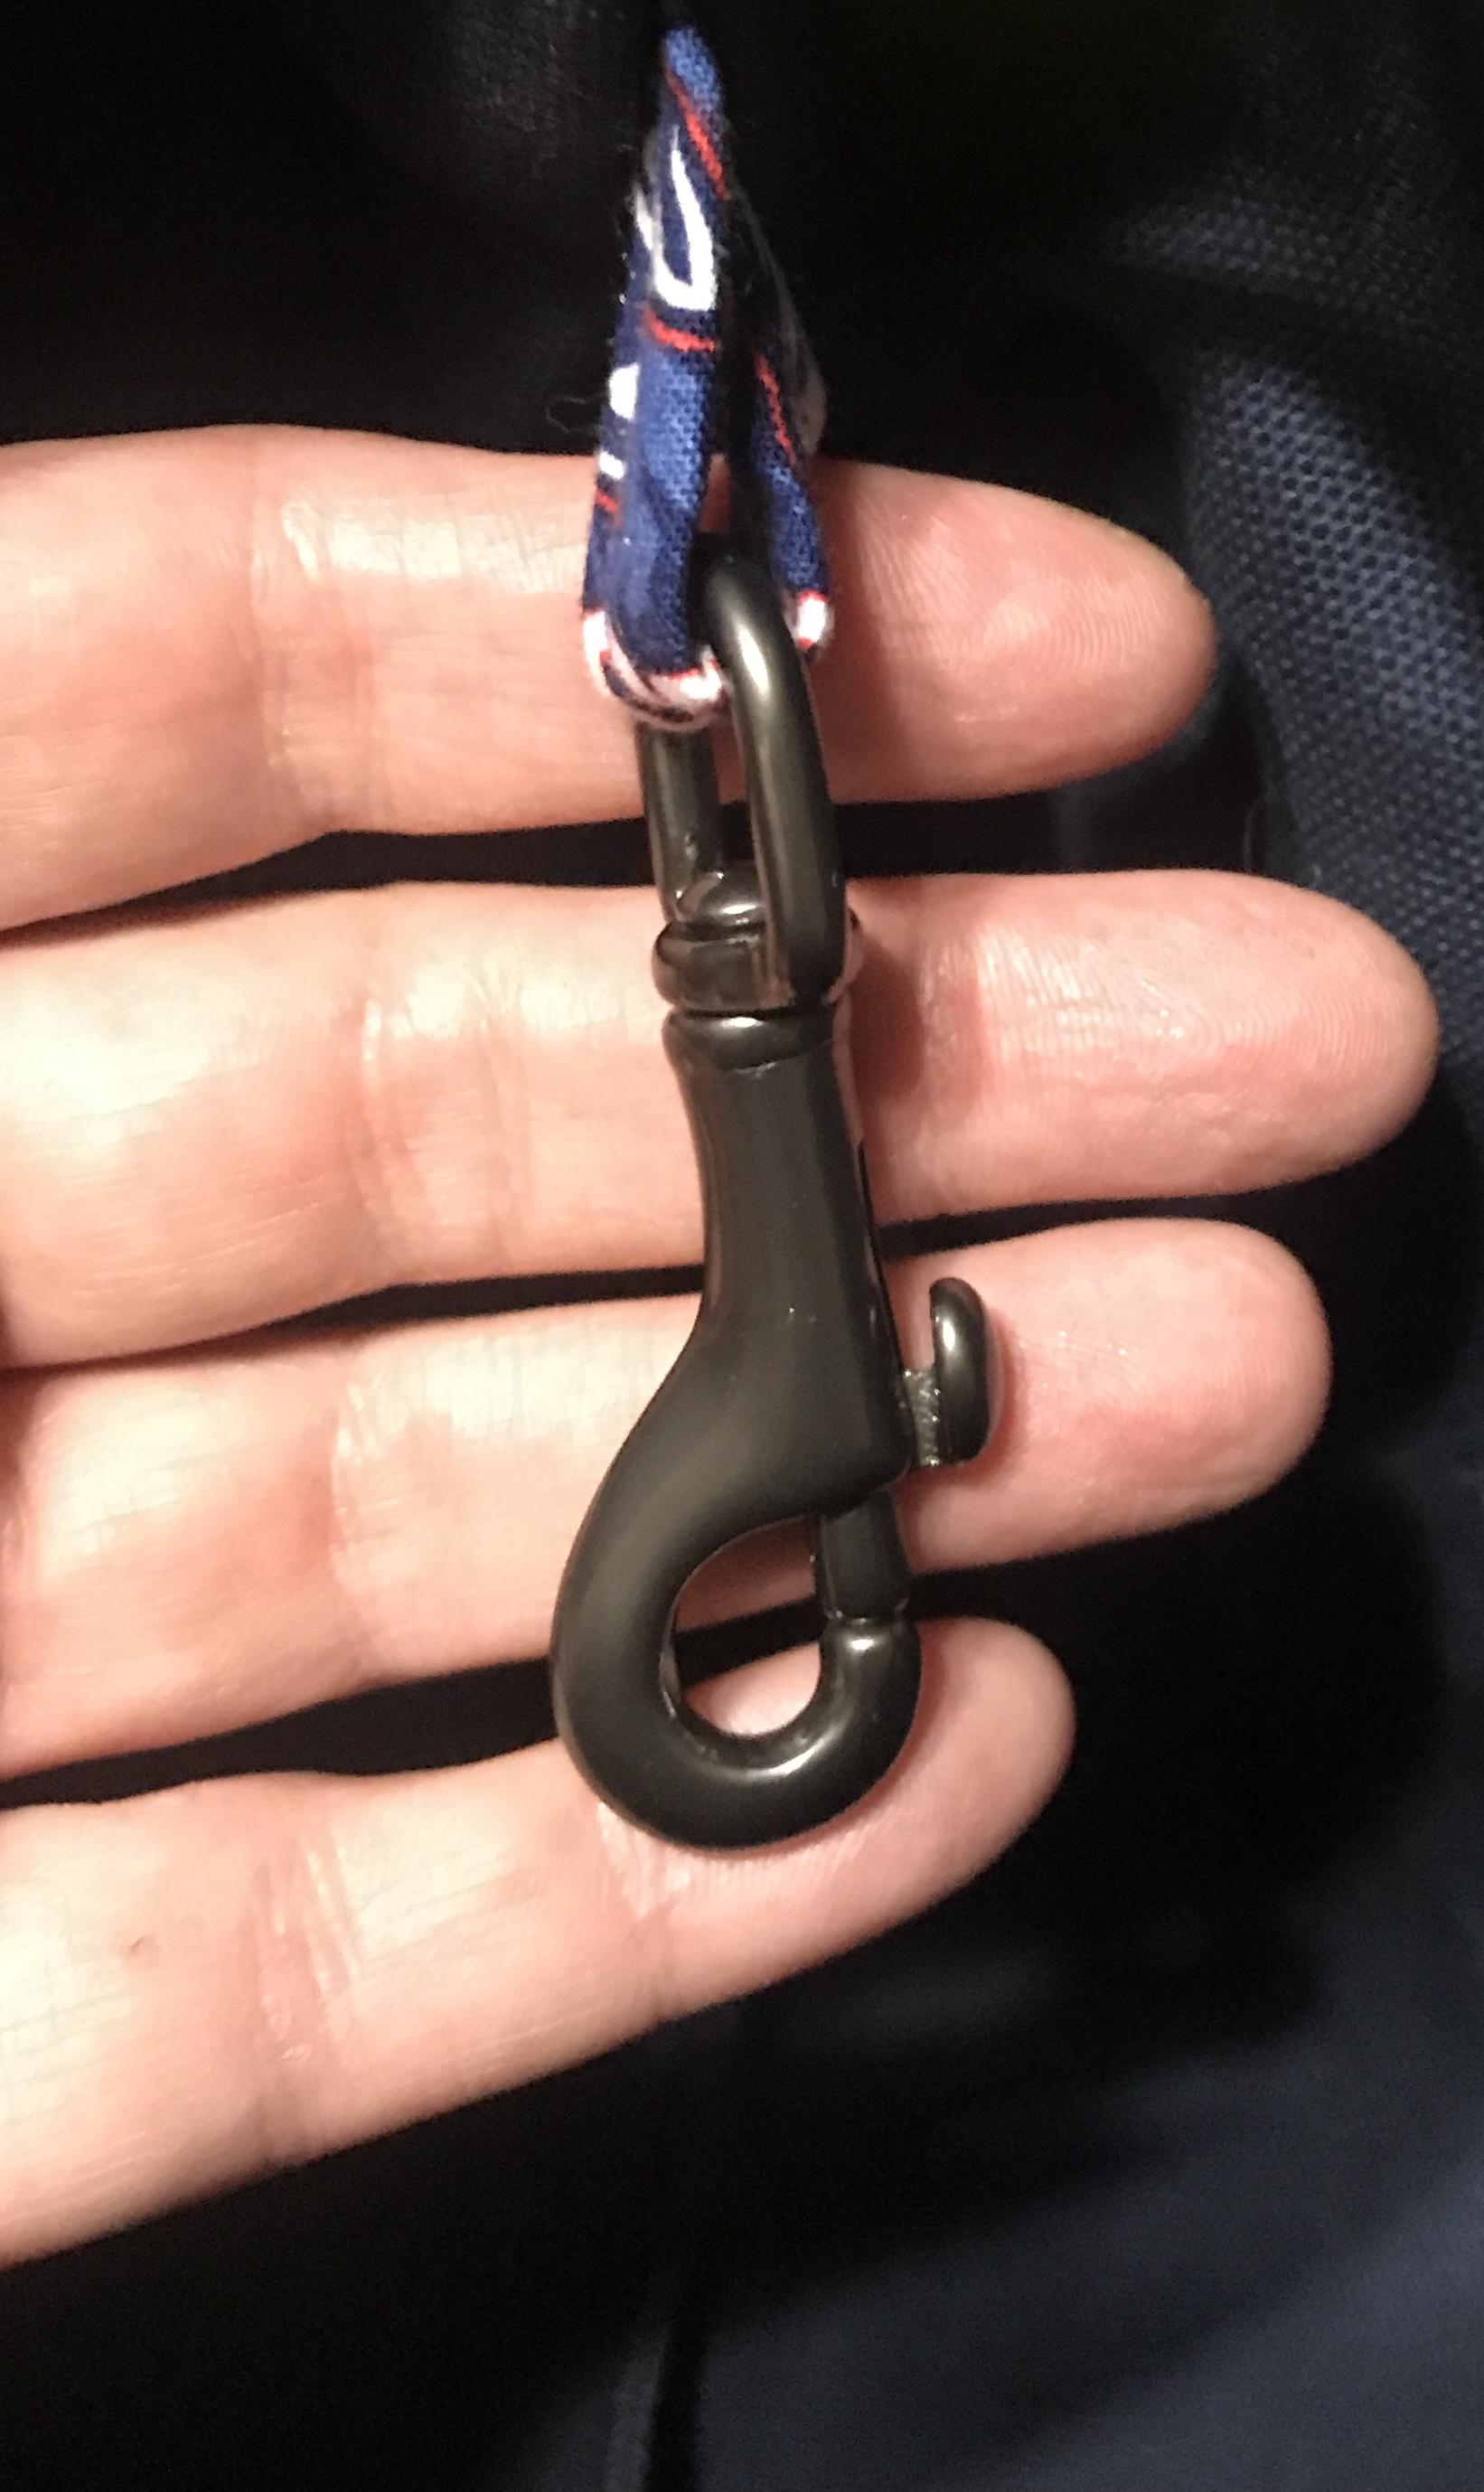 Swivel hook inside for keys, etc. (color of hook may vary)